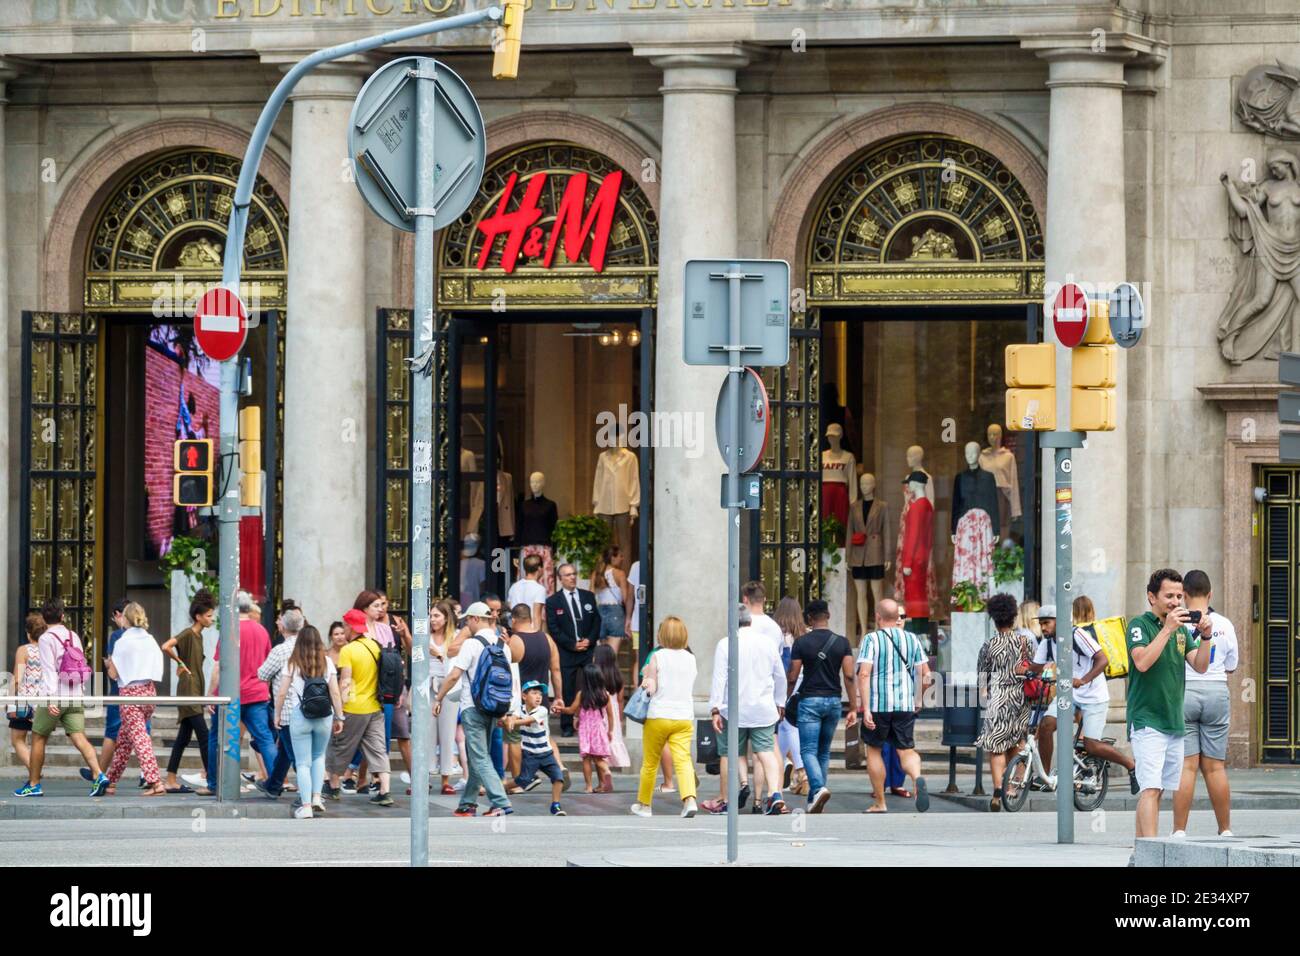 España Barcelona Cataluña Catalunya Passeig de Gracia distrito comercial  Entrada principal H&M tienda de ropa minorista moda peatonal hispano  Fotografía de stock - Alamy